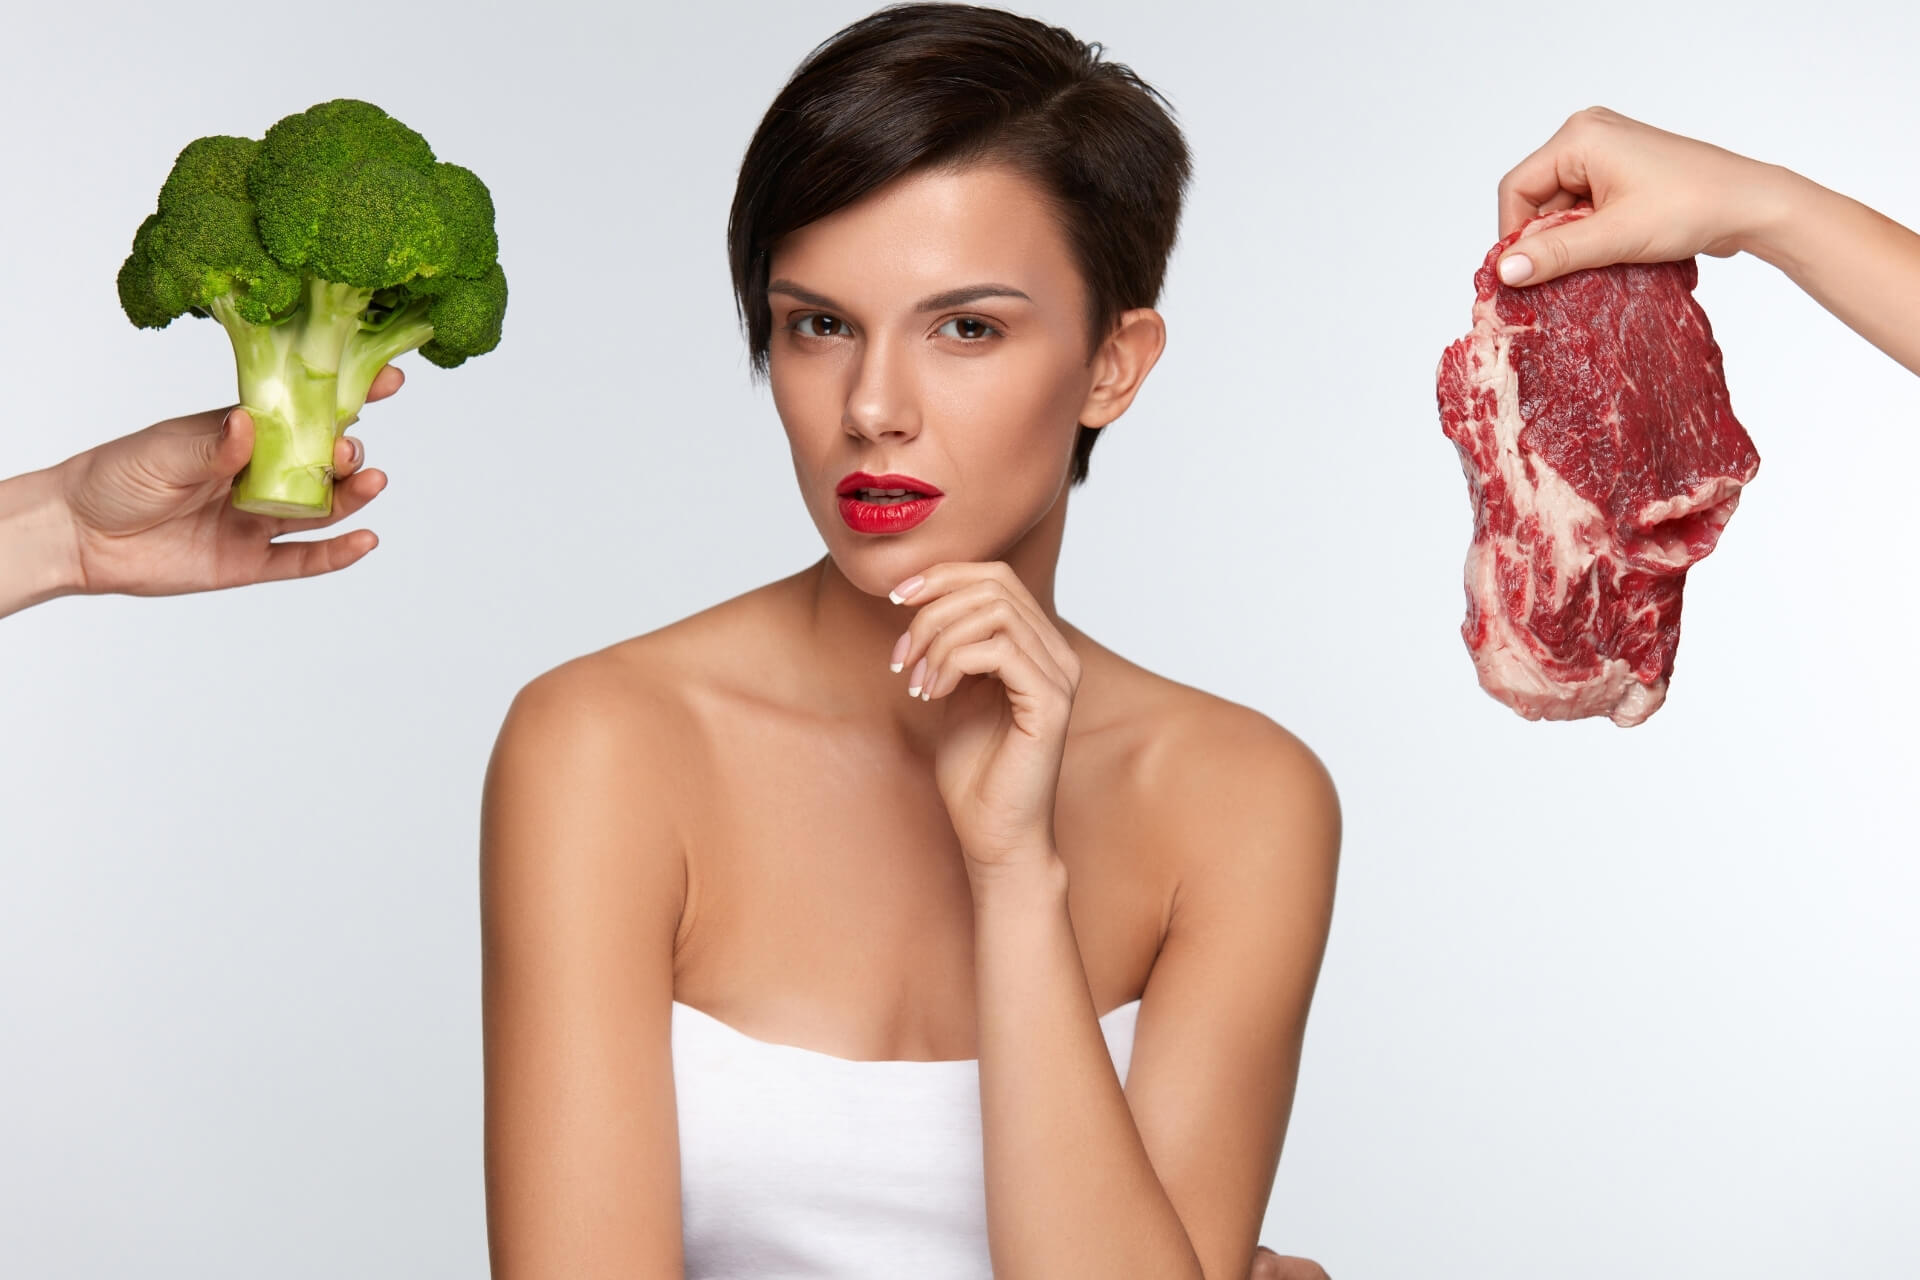 dieta vegetariana vs dieta onnivora e consumo di carne: pro e contro